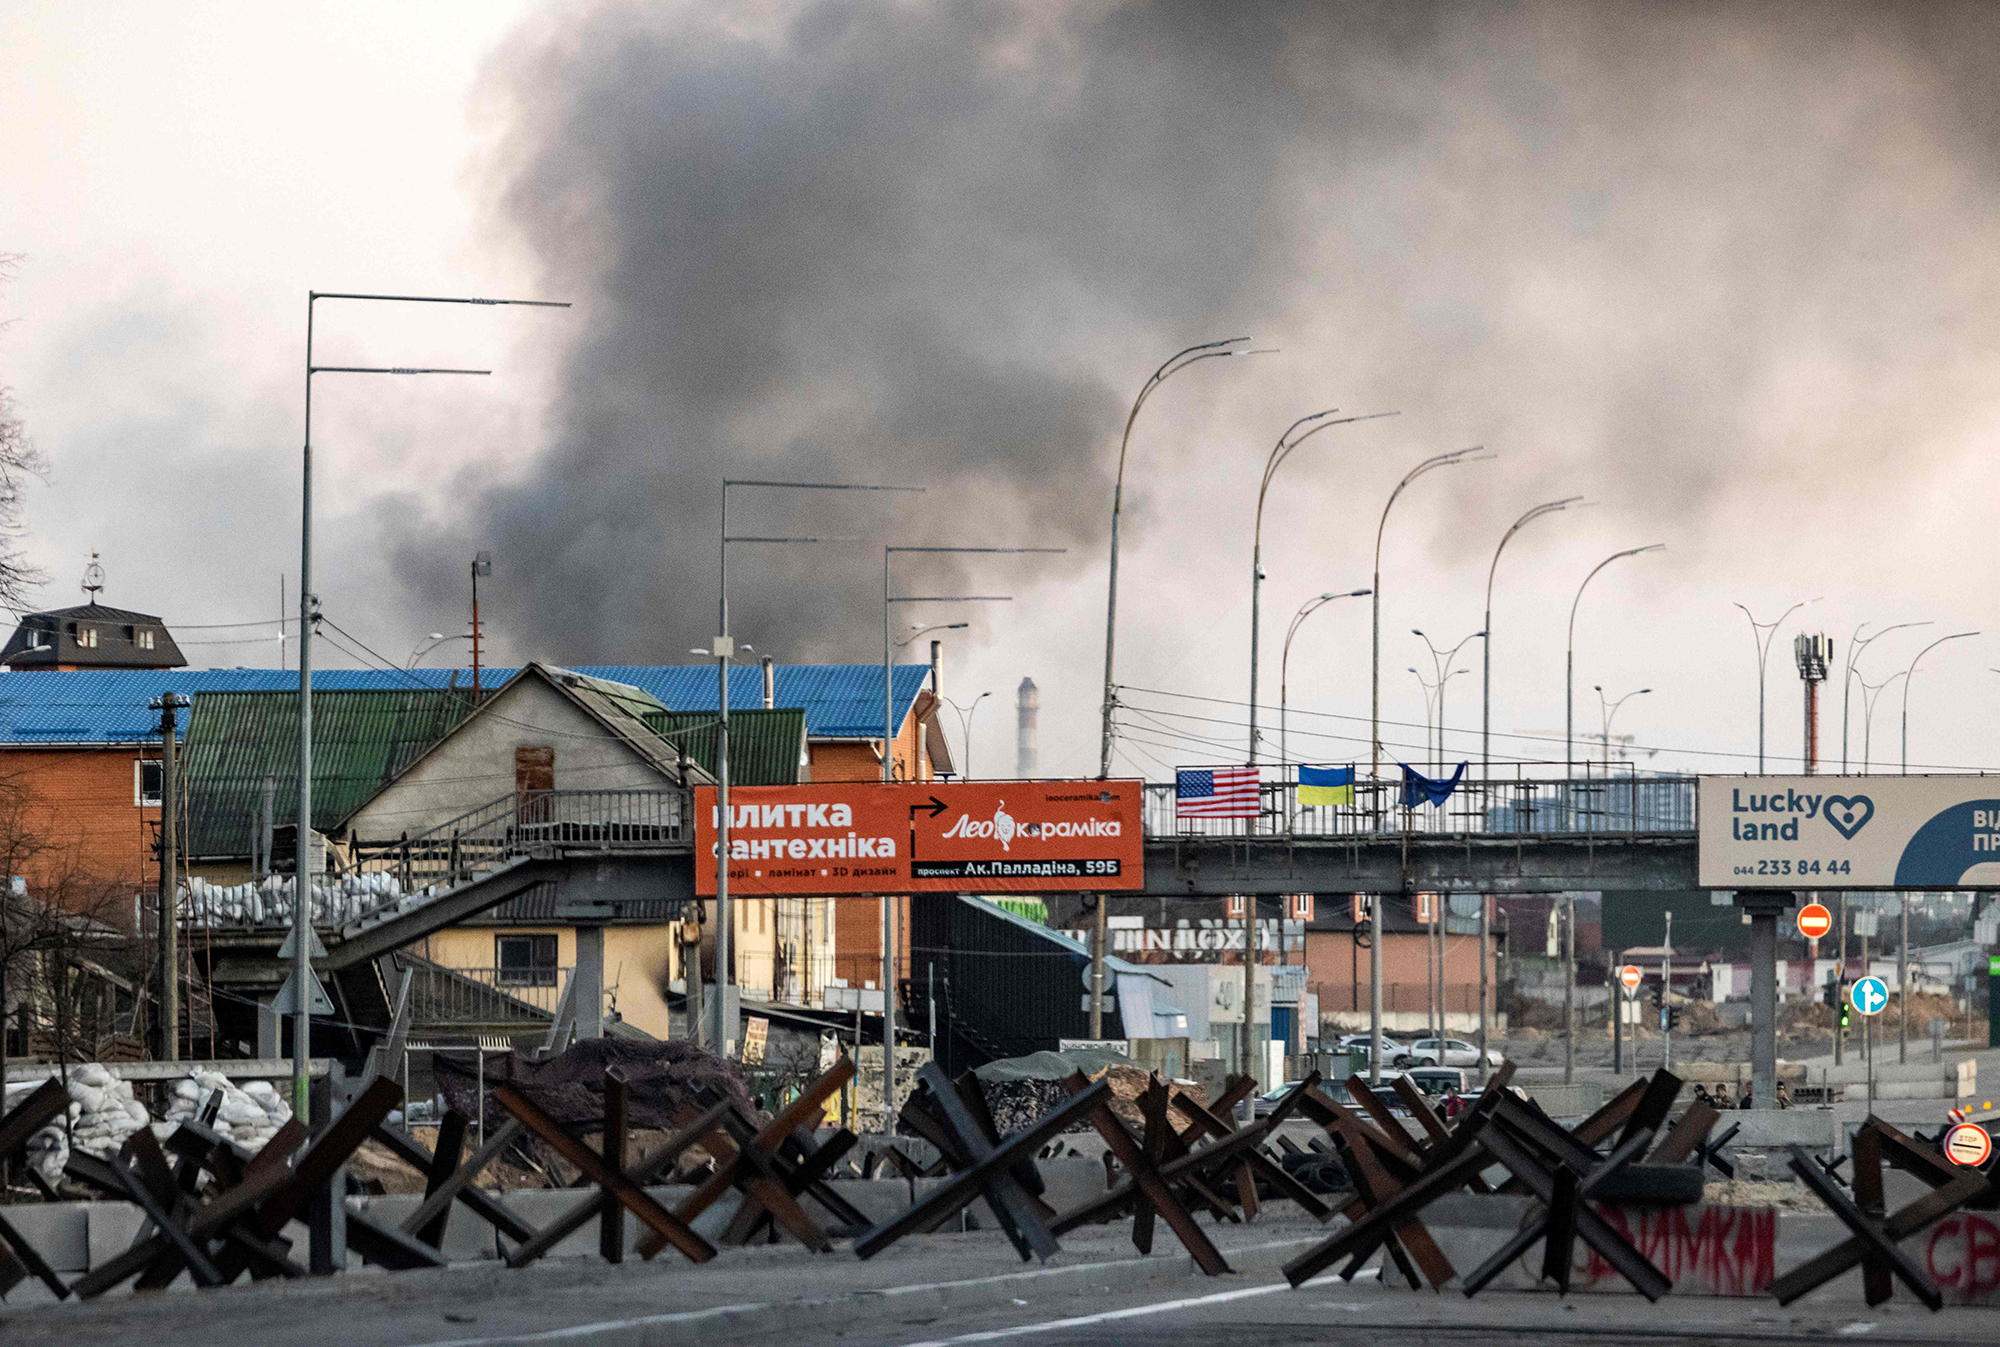 Sex is on fire the do in Kiev